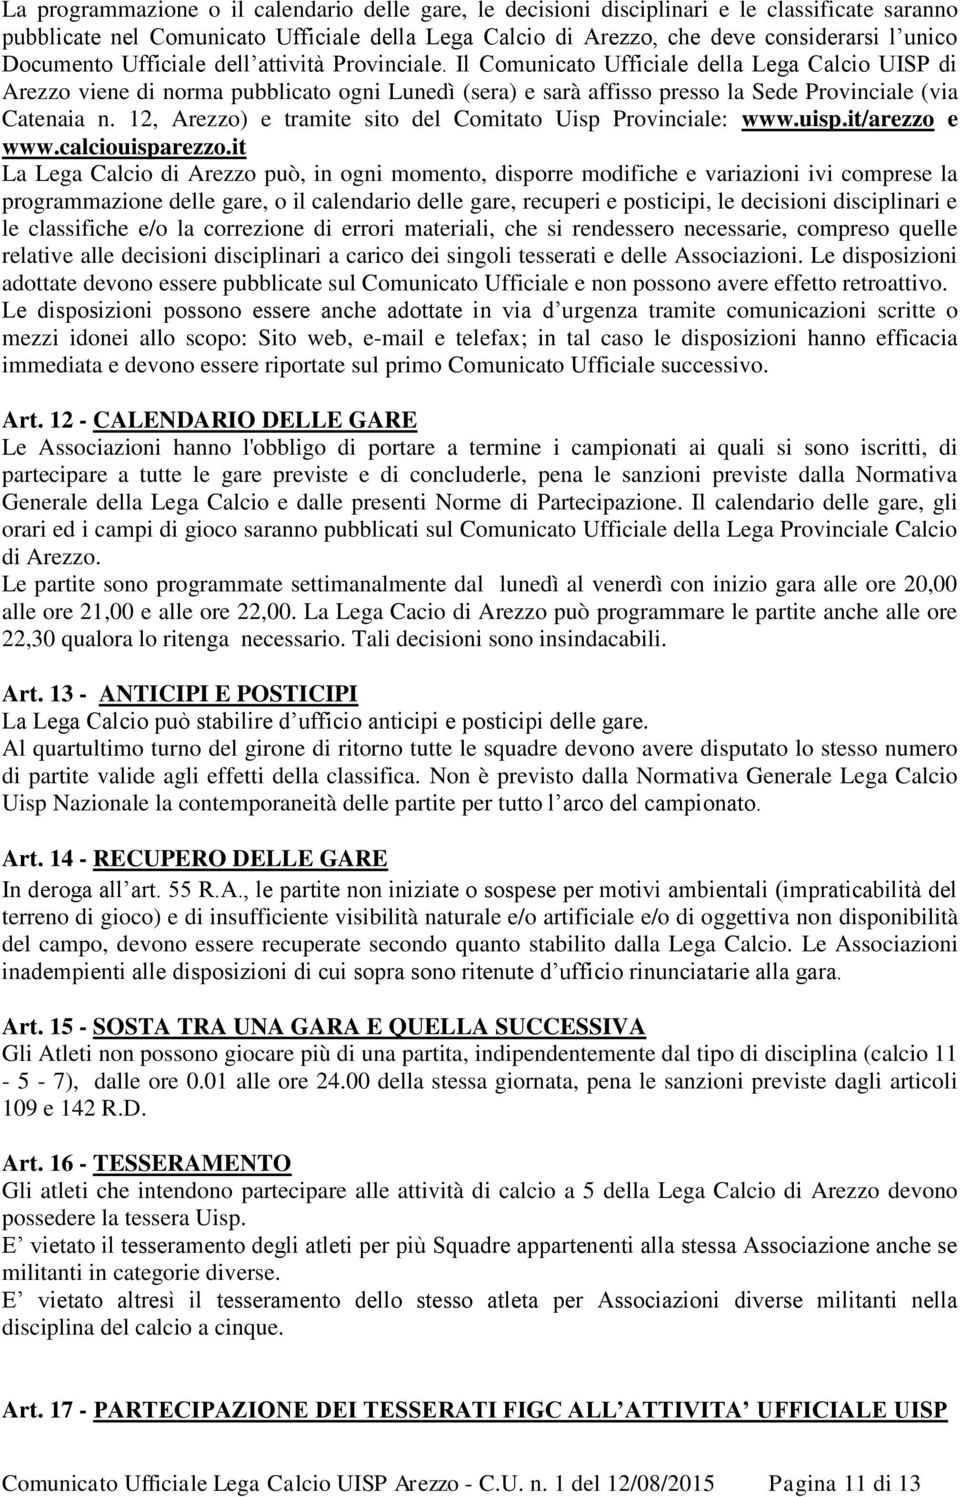 Il Comunicato Ufficiale della Lega Calcio UISP di Arezzo viene di norma pubblicato ogni Lunedì (sera) e sarà affisso presso la Sede Provinciale (via Catenaia n.